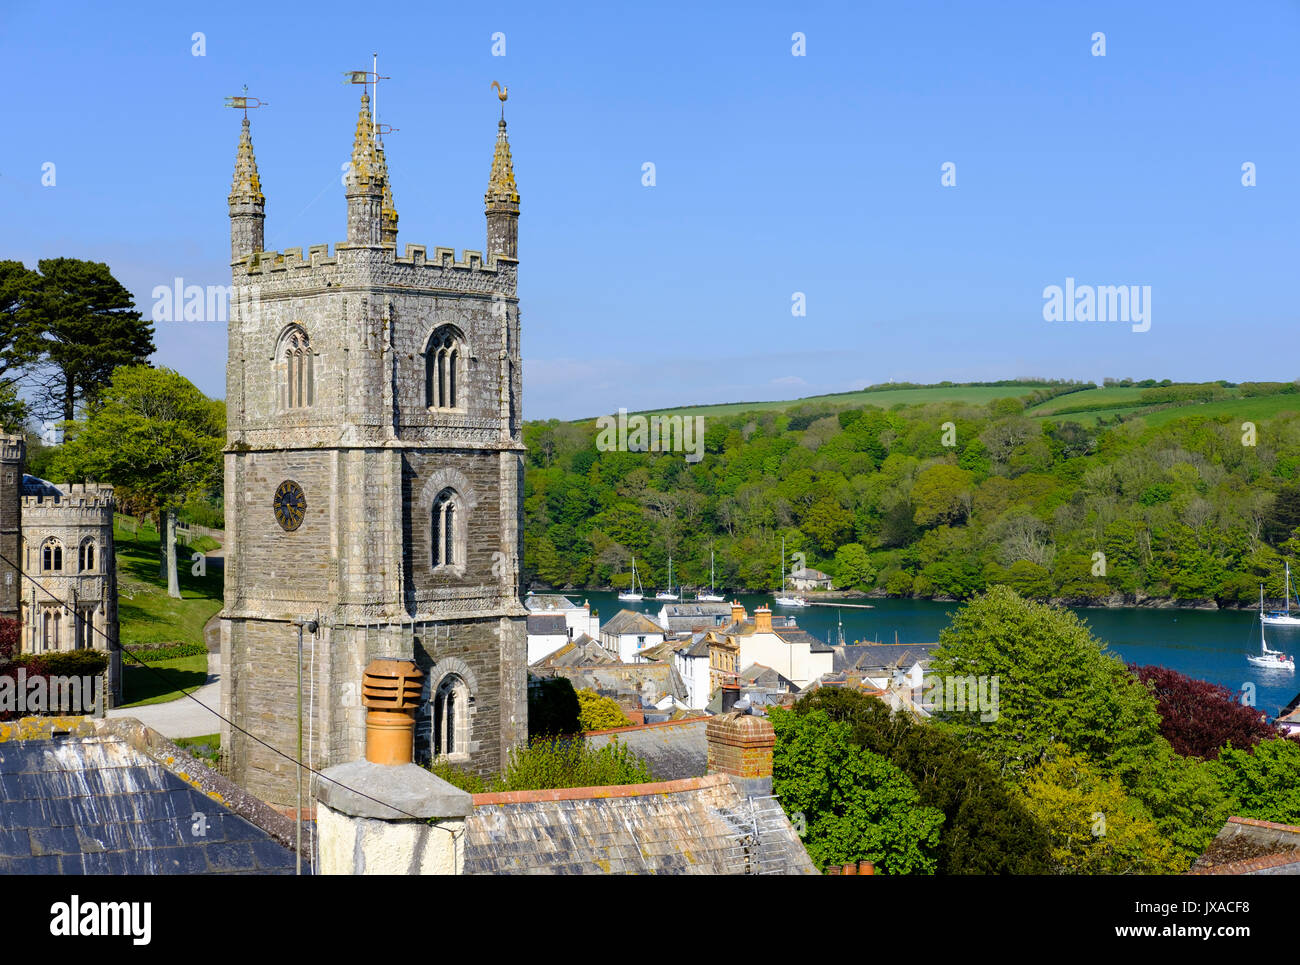 Clocher de l'église de St Fimbarrus église paroissiale, Fowey, Cornwall, Angleterre, Royaume-Uni Banque D'Images